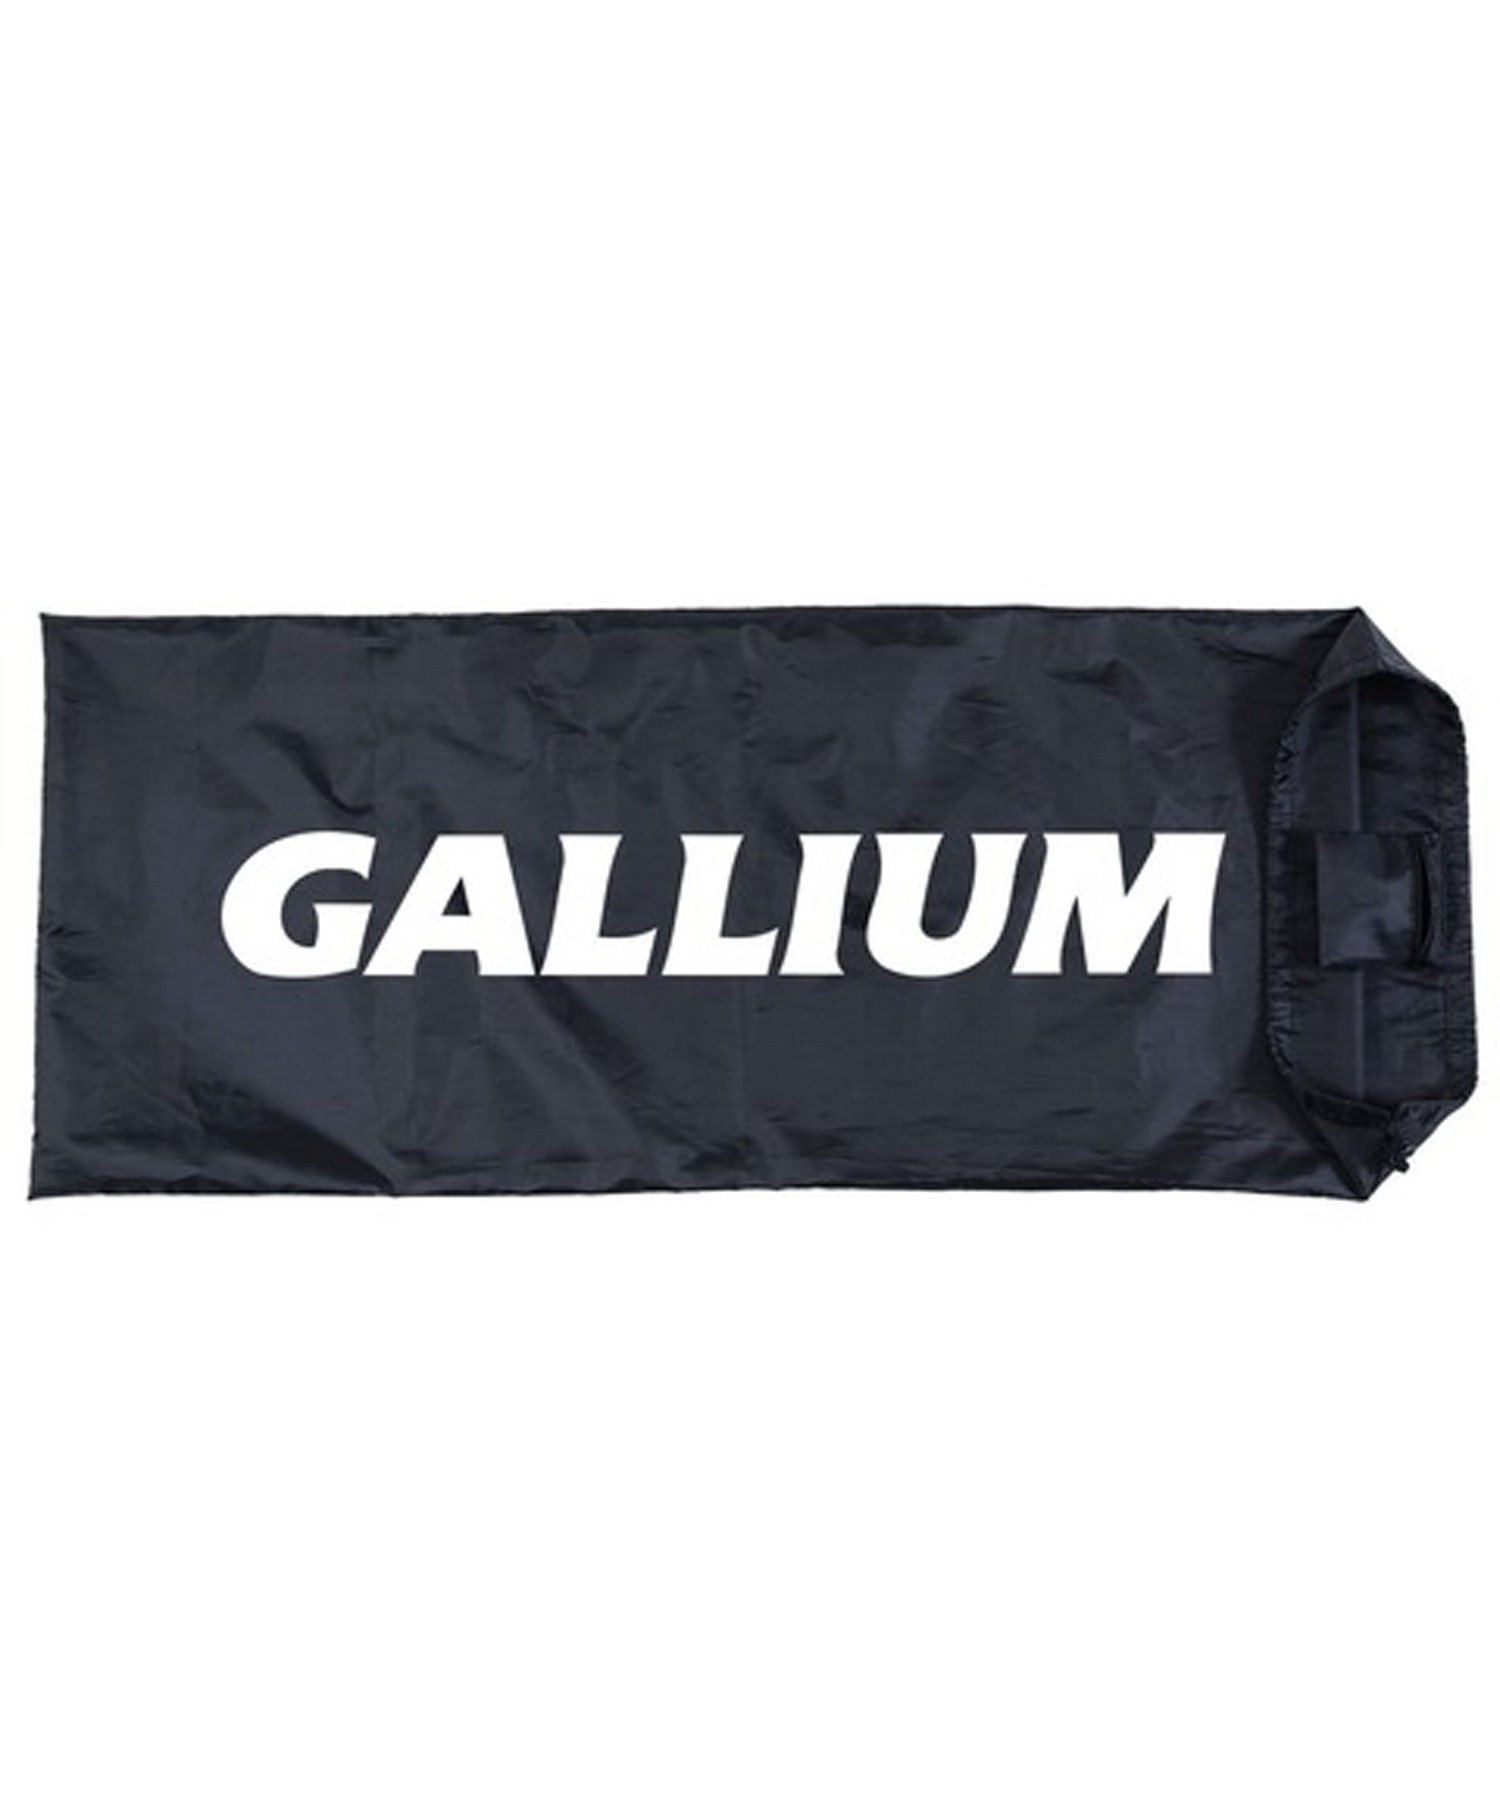 スノーボード メンテナンス ワックススタンド ワックス台 GALLIUM ガリウム SP3126 ムラサキスポーツ 23-24モデル KK L21(ONECOLOR-ONESIZE)